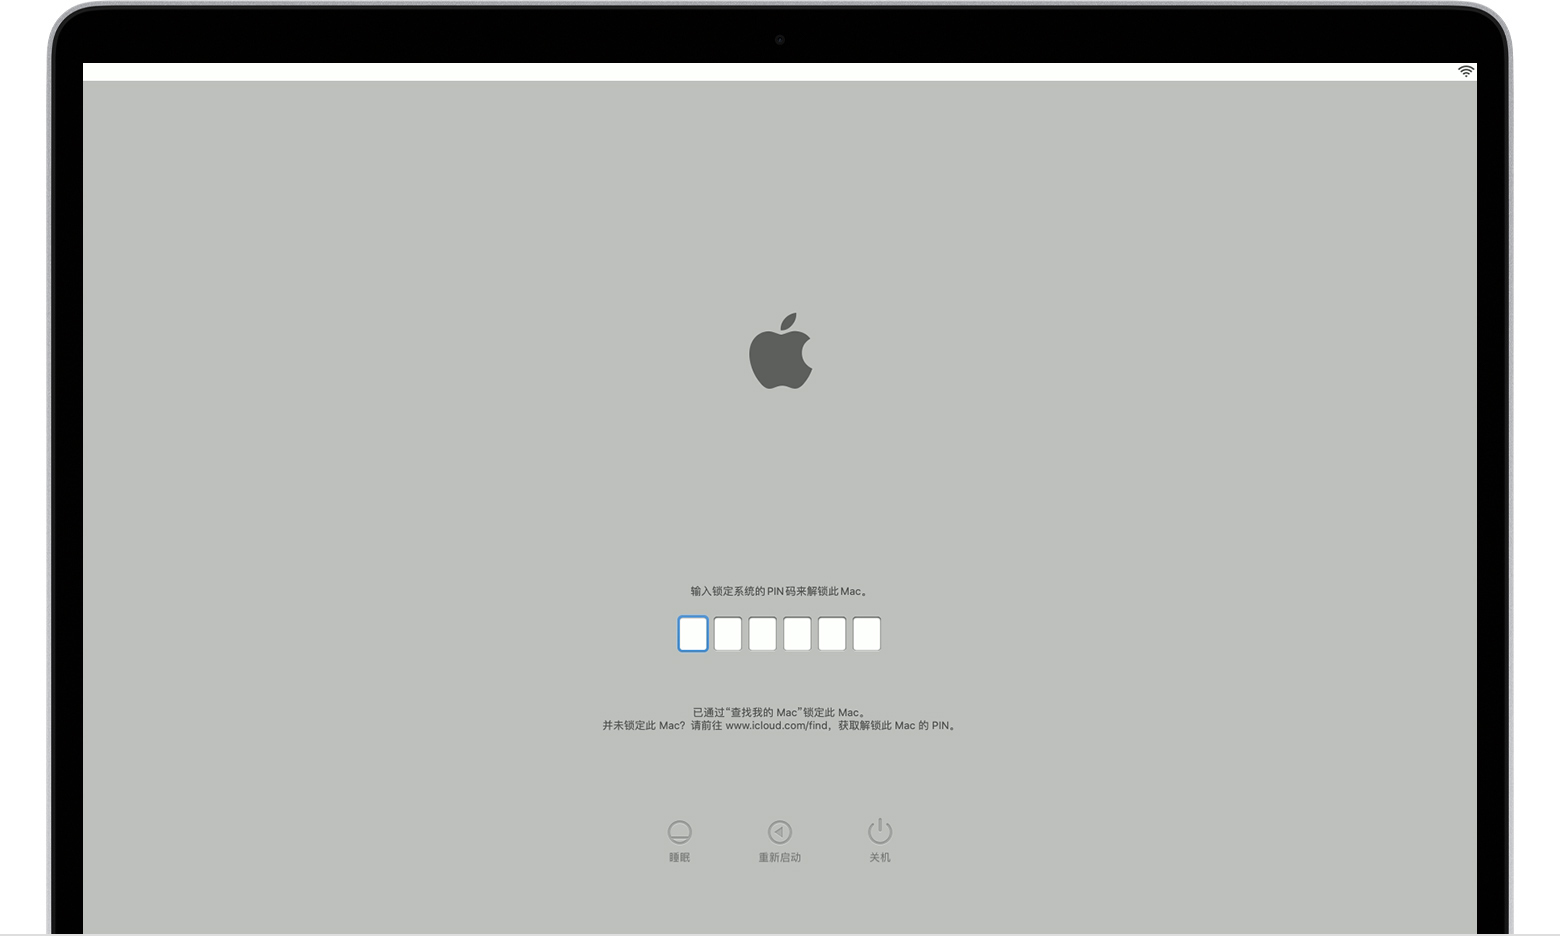 macOS 锁定系统的 PIN 码启动屏幕